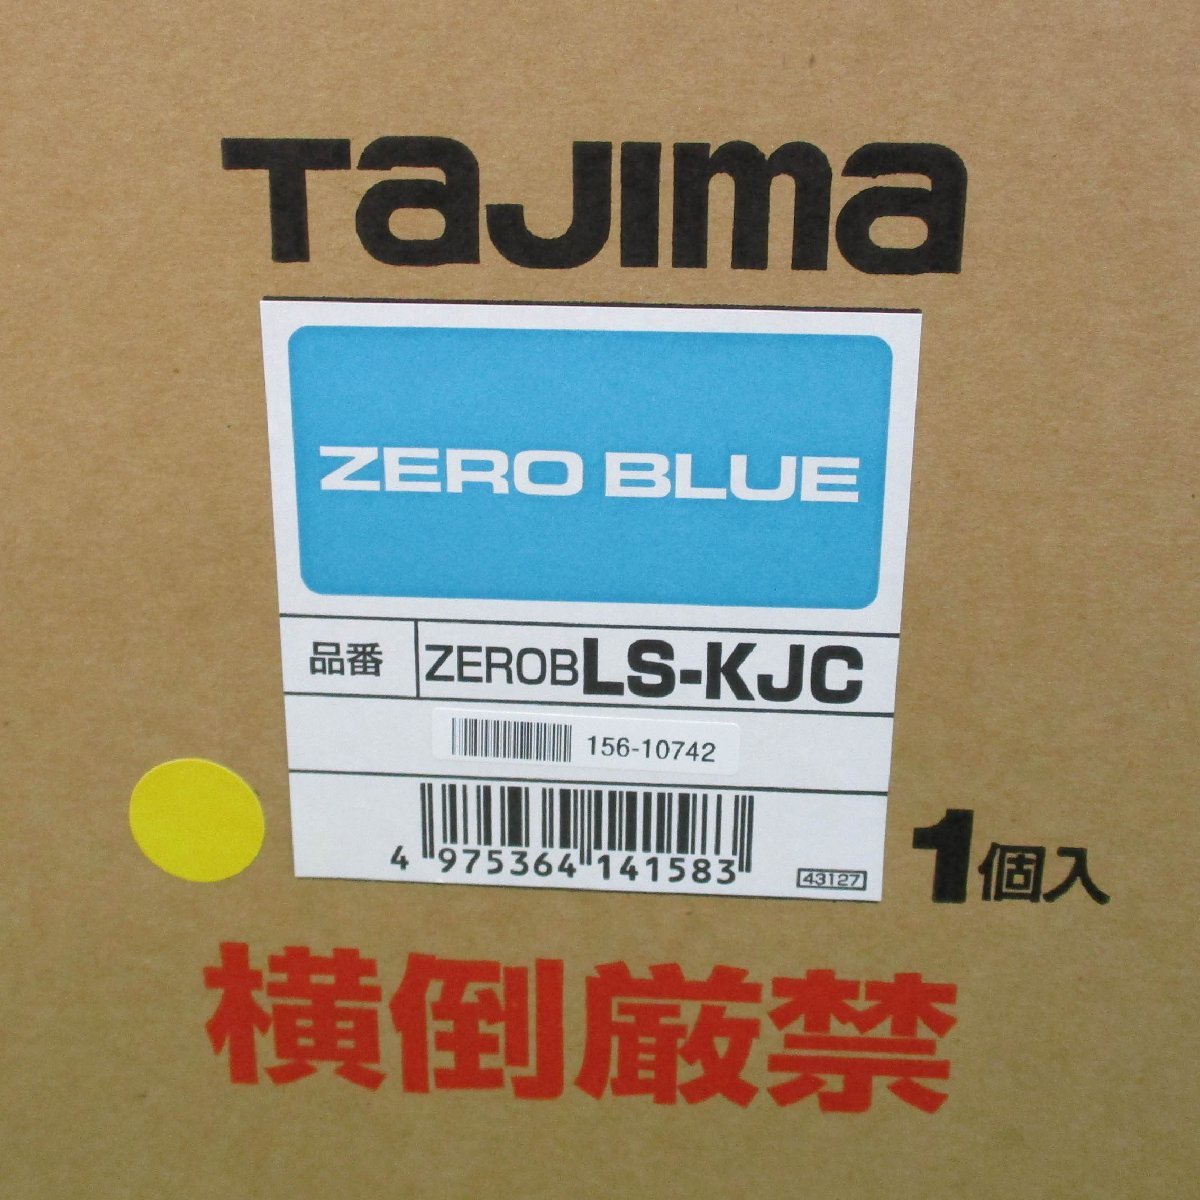 Tajima タジマ ブルーグリーンレーザー 墨出し器 ZEROBLS-KJC ZERO